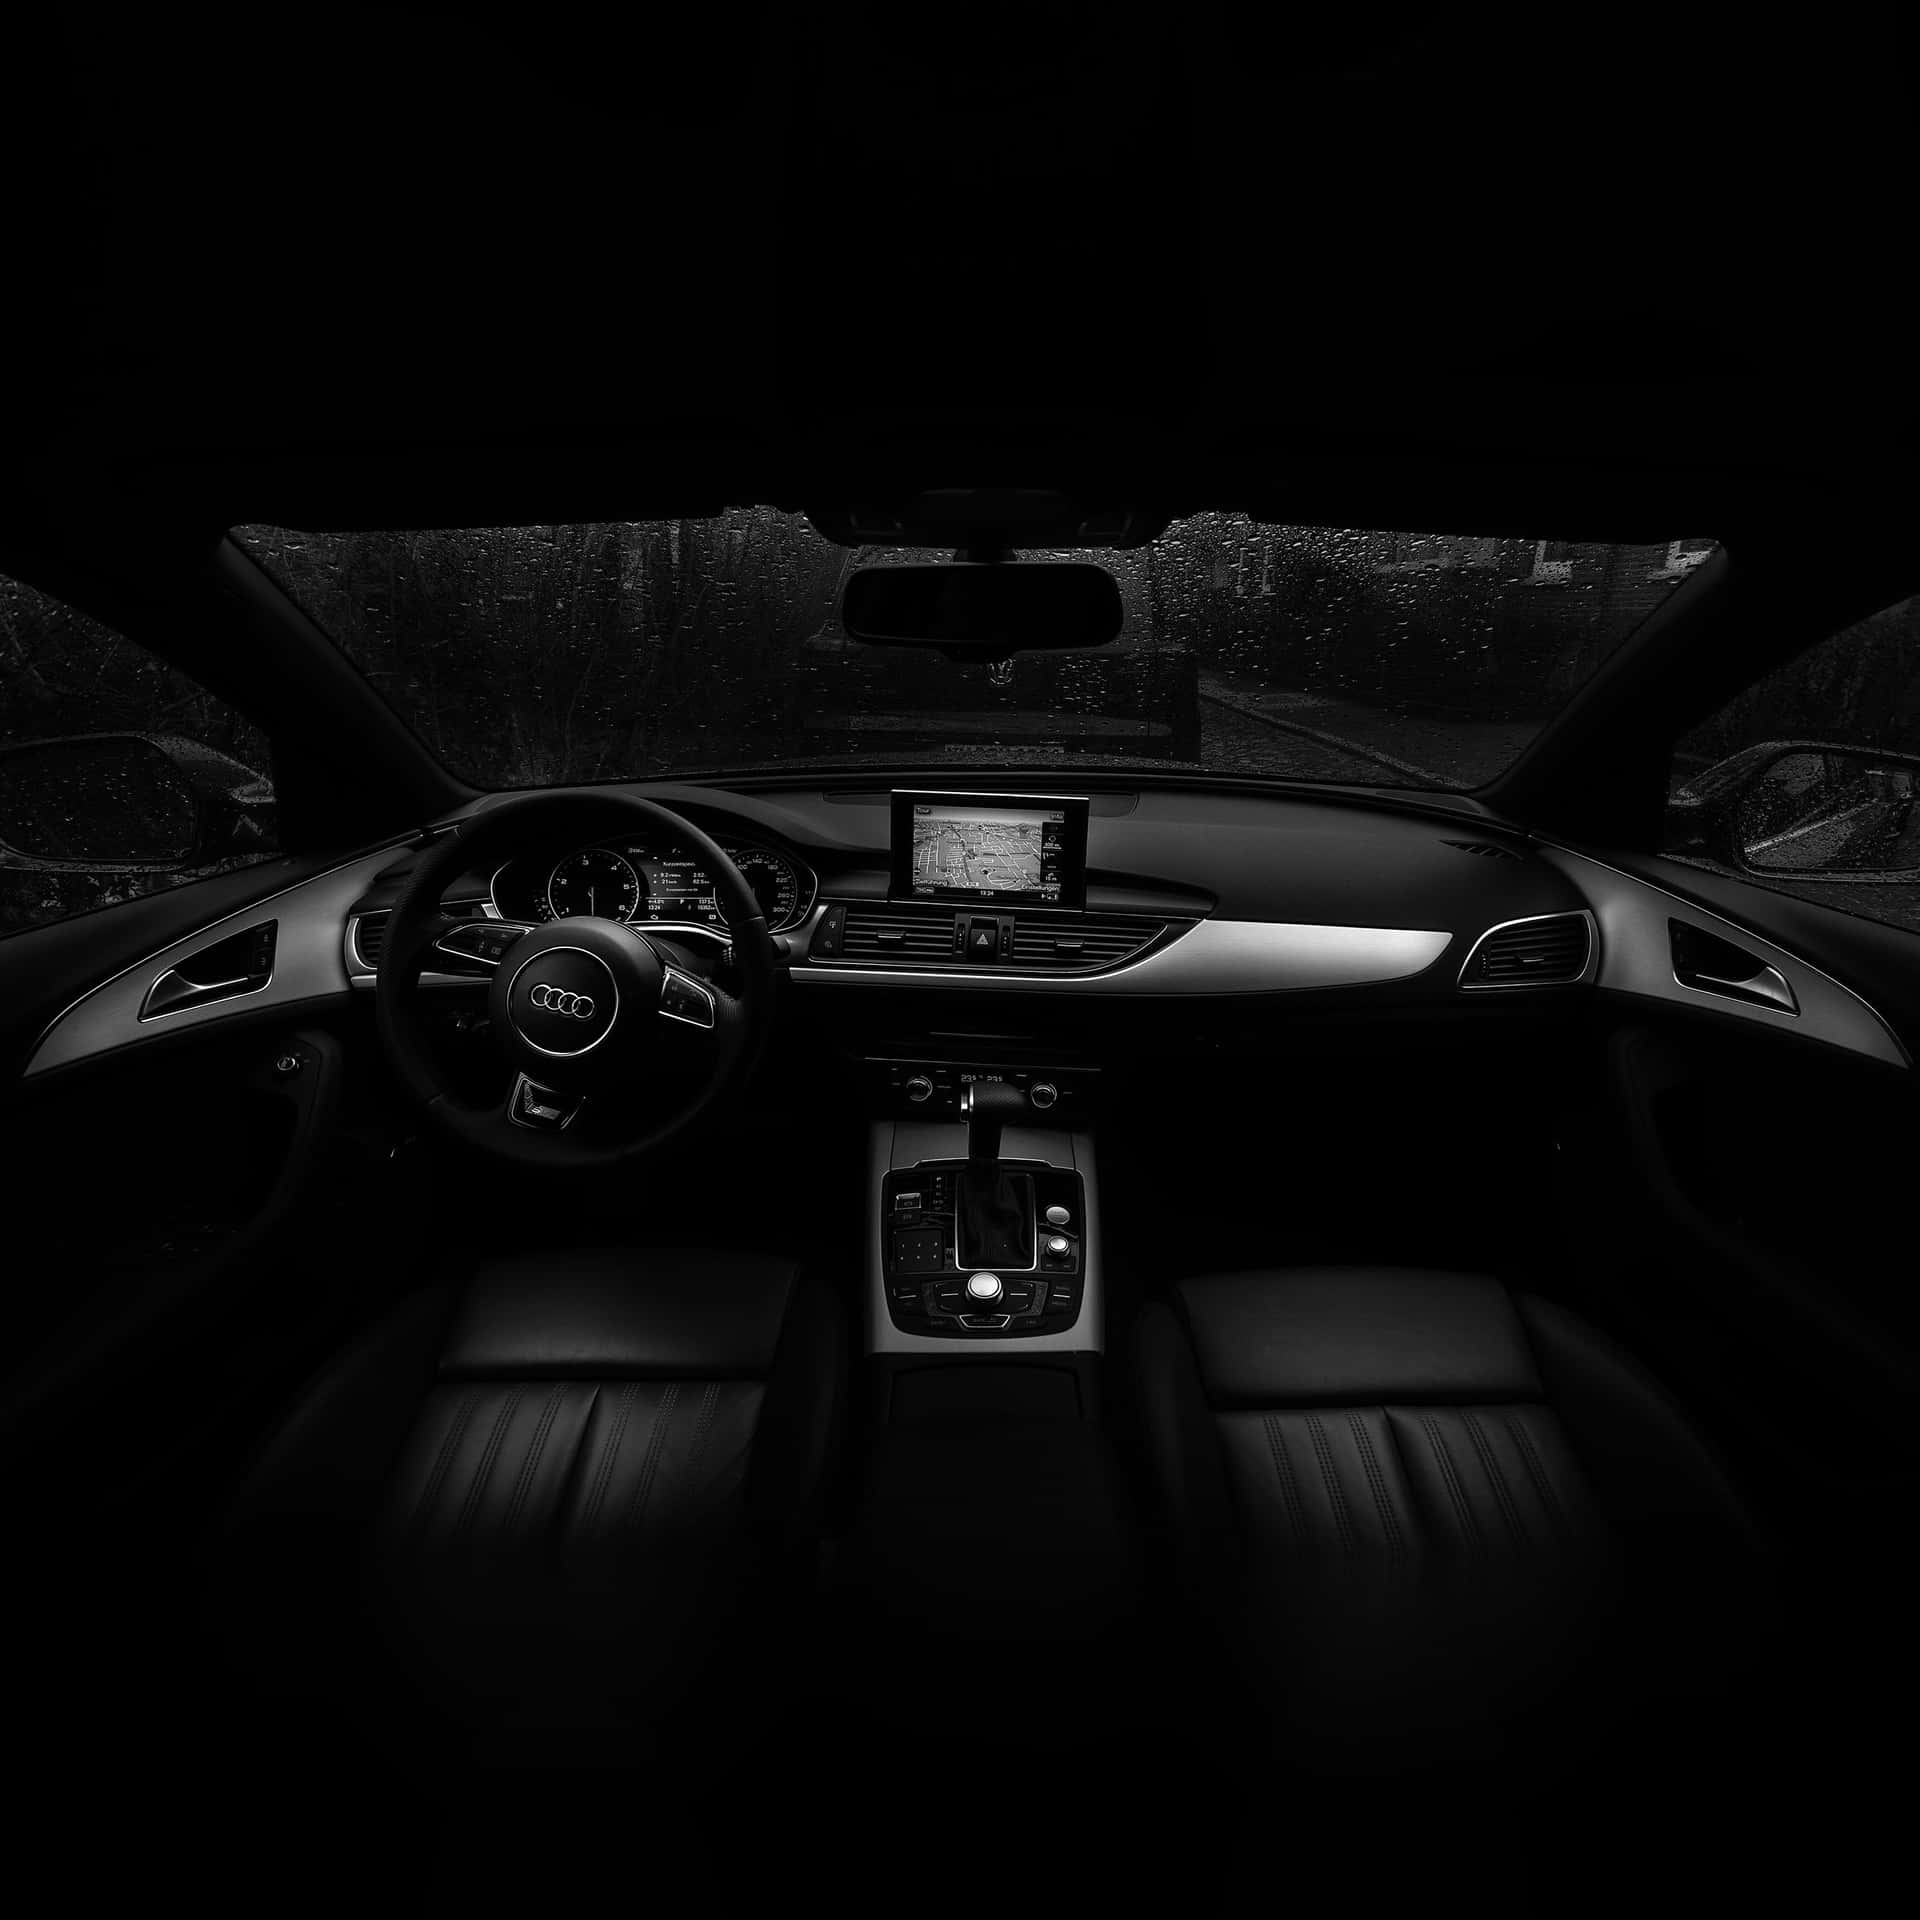 Audi A6 Interior - Black And White